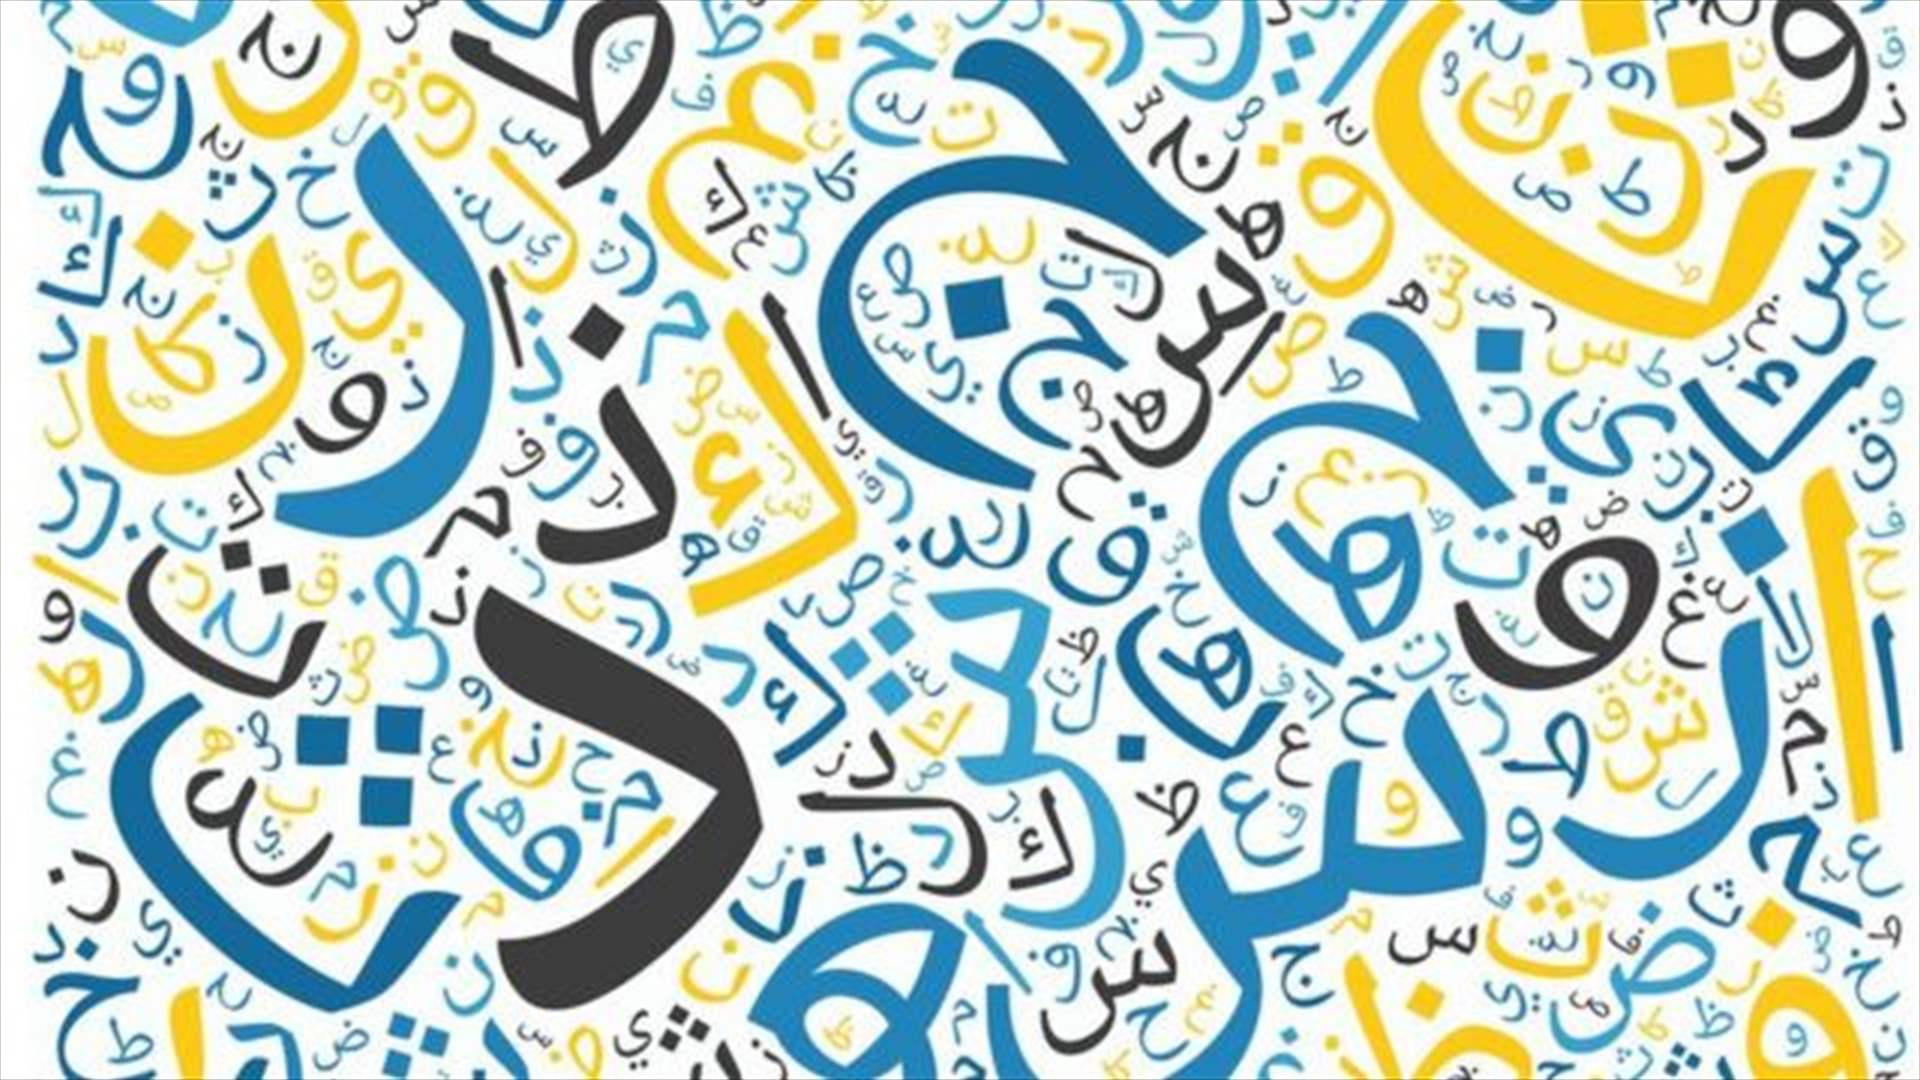 في اليوم العالمي للغة العربية... إليكم أبرز الأخطاء الشائعة الّتي نقع فيها يومياً (فيديو) 